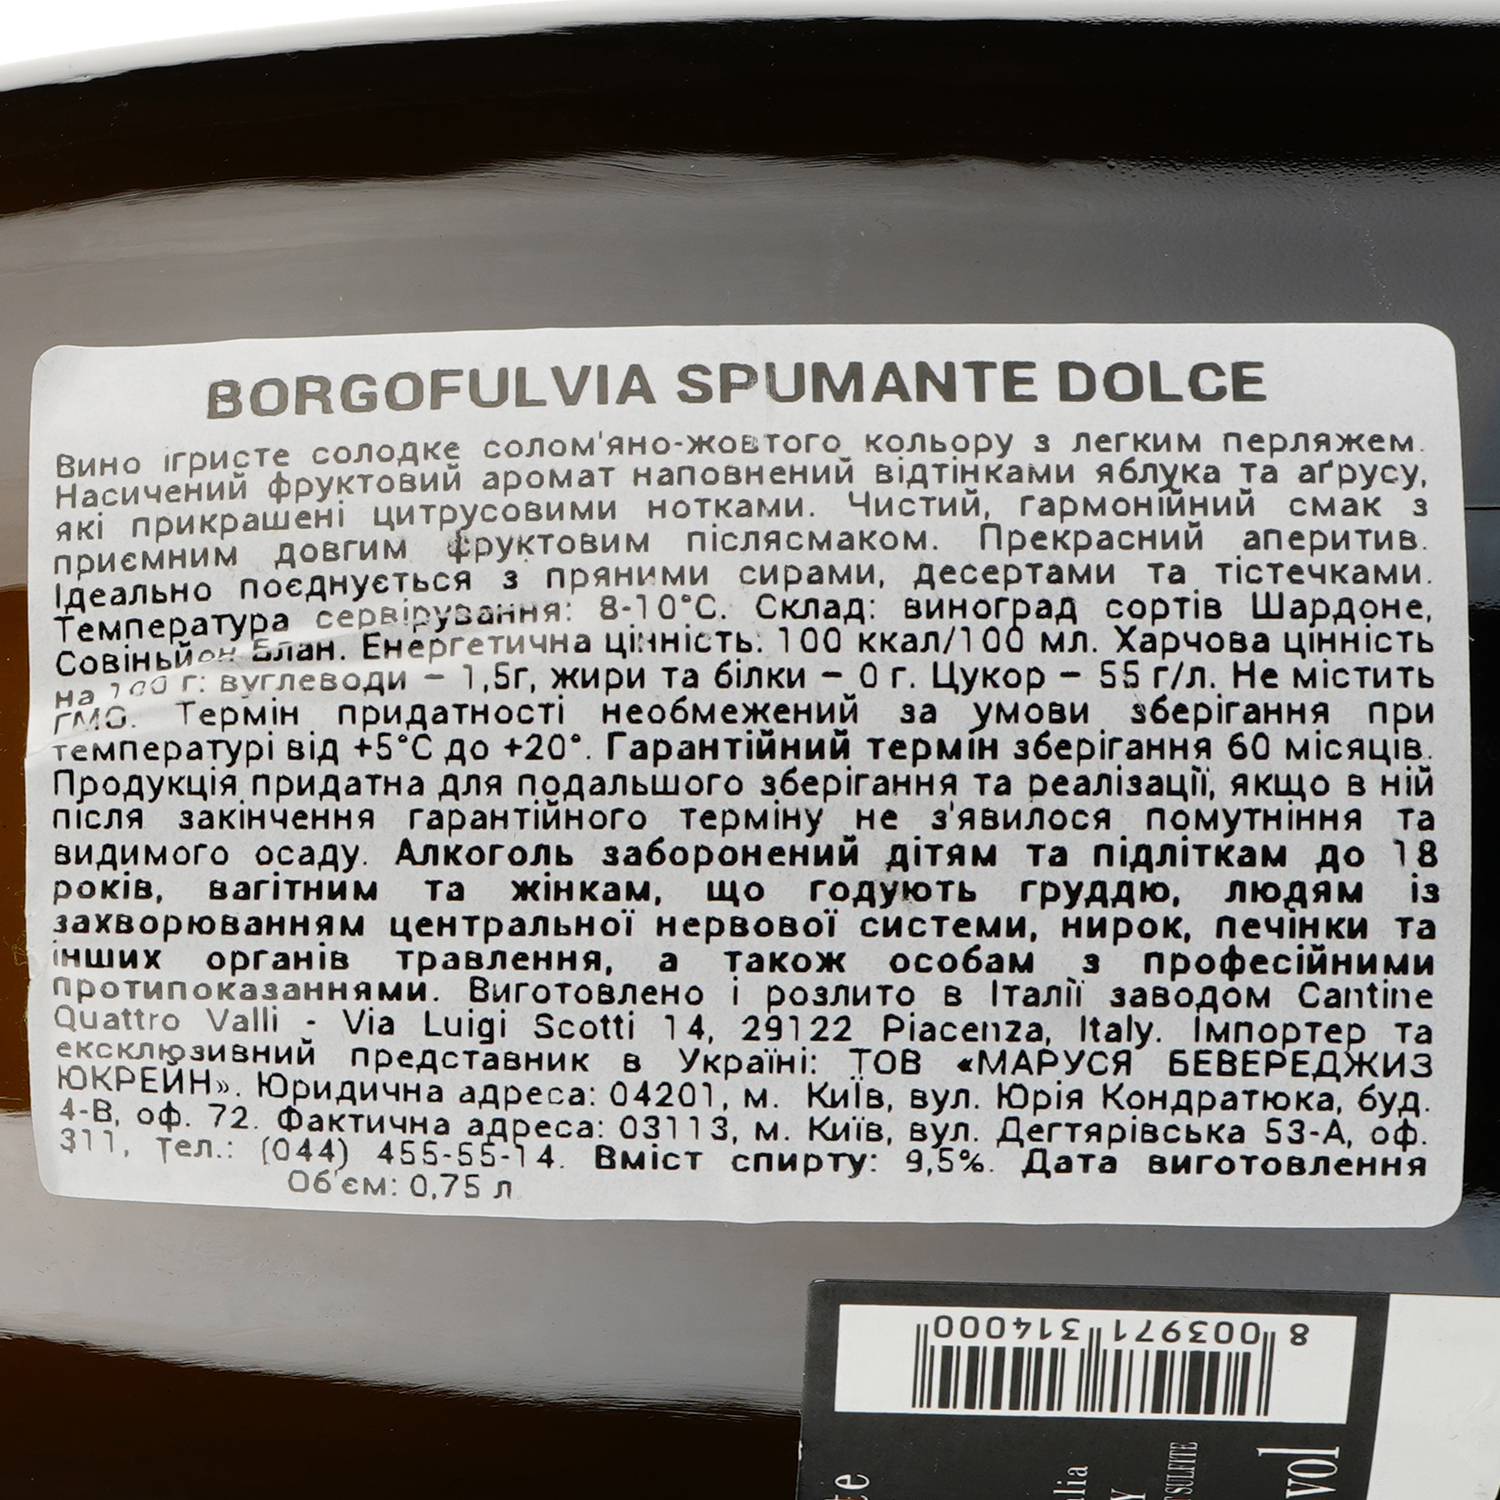 Игристое вино Borgofulvia Spumante Bianco dolce, белое, полусладкое, 9,5%, 0,75 л - фото 3